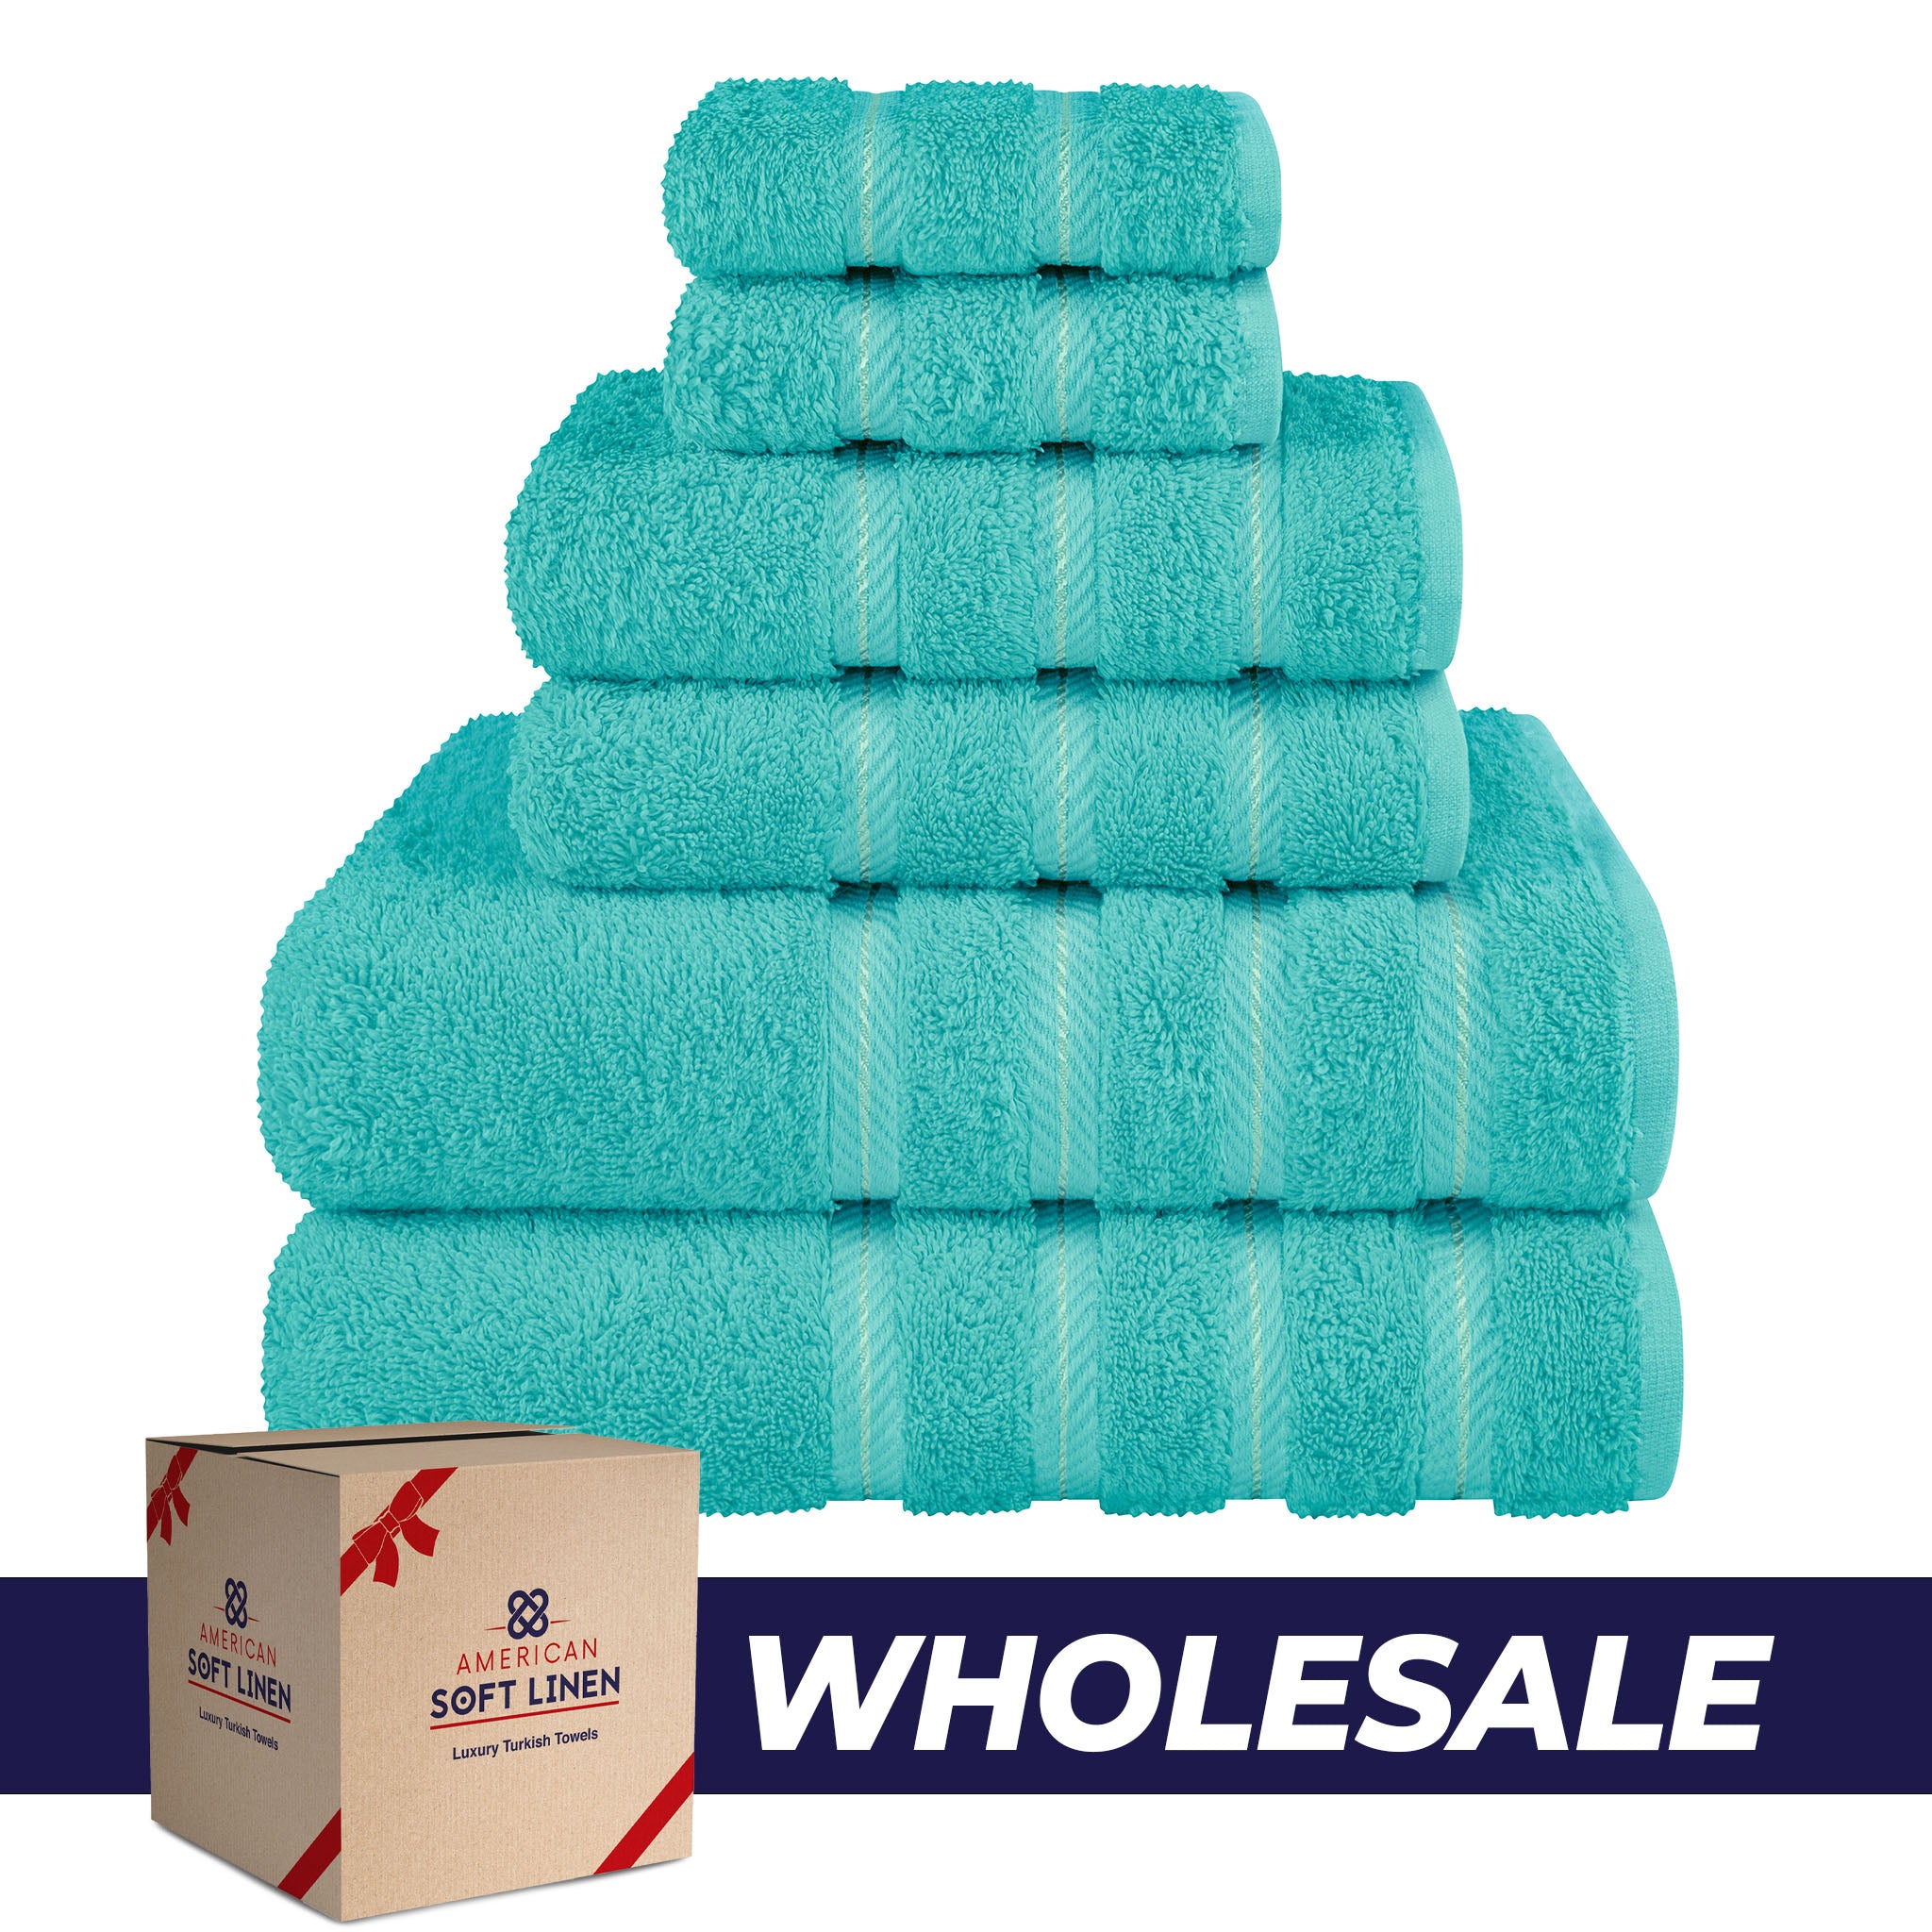 American Soft Linen 100% Turkish Cotton 6 Piece Towel Set Wholesale turquoise-blue-0